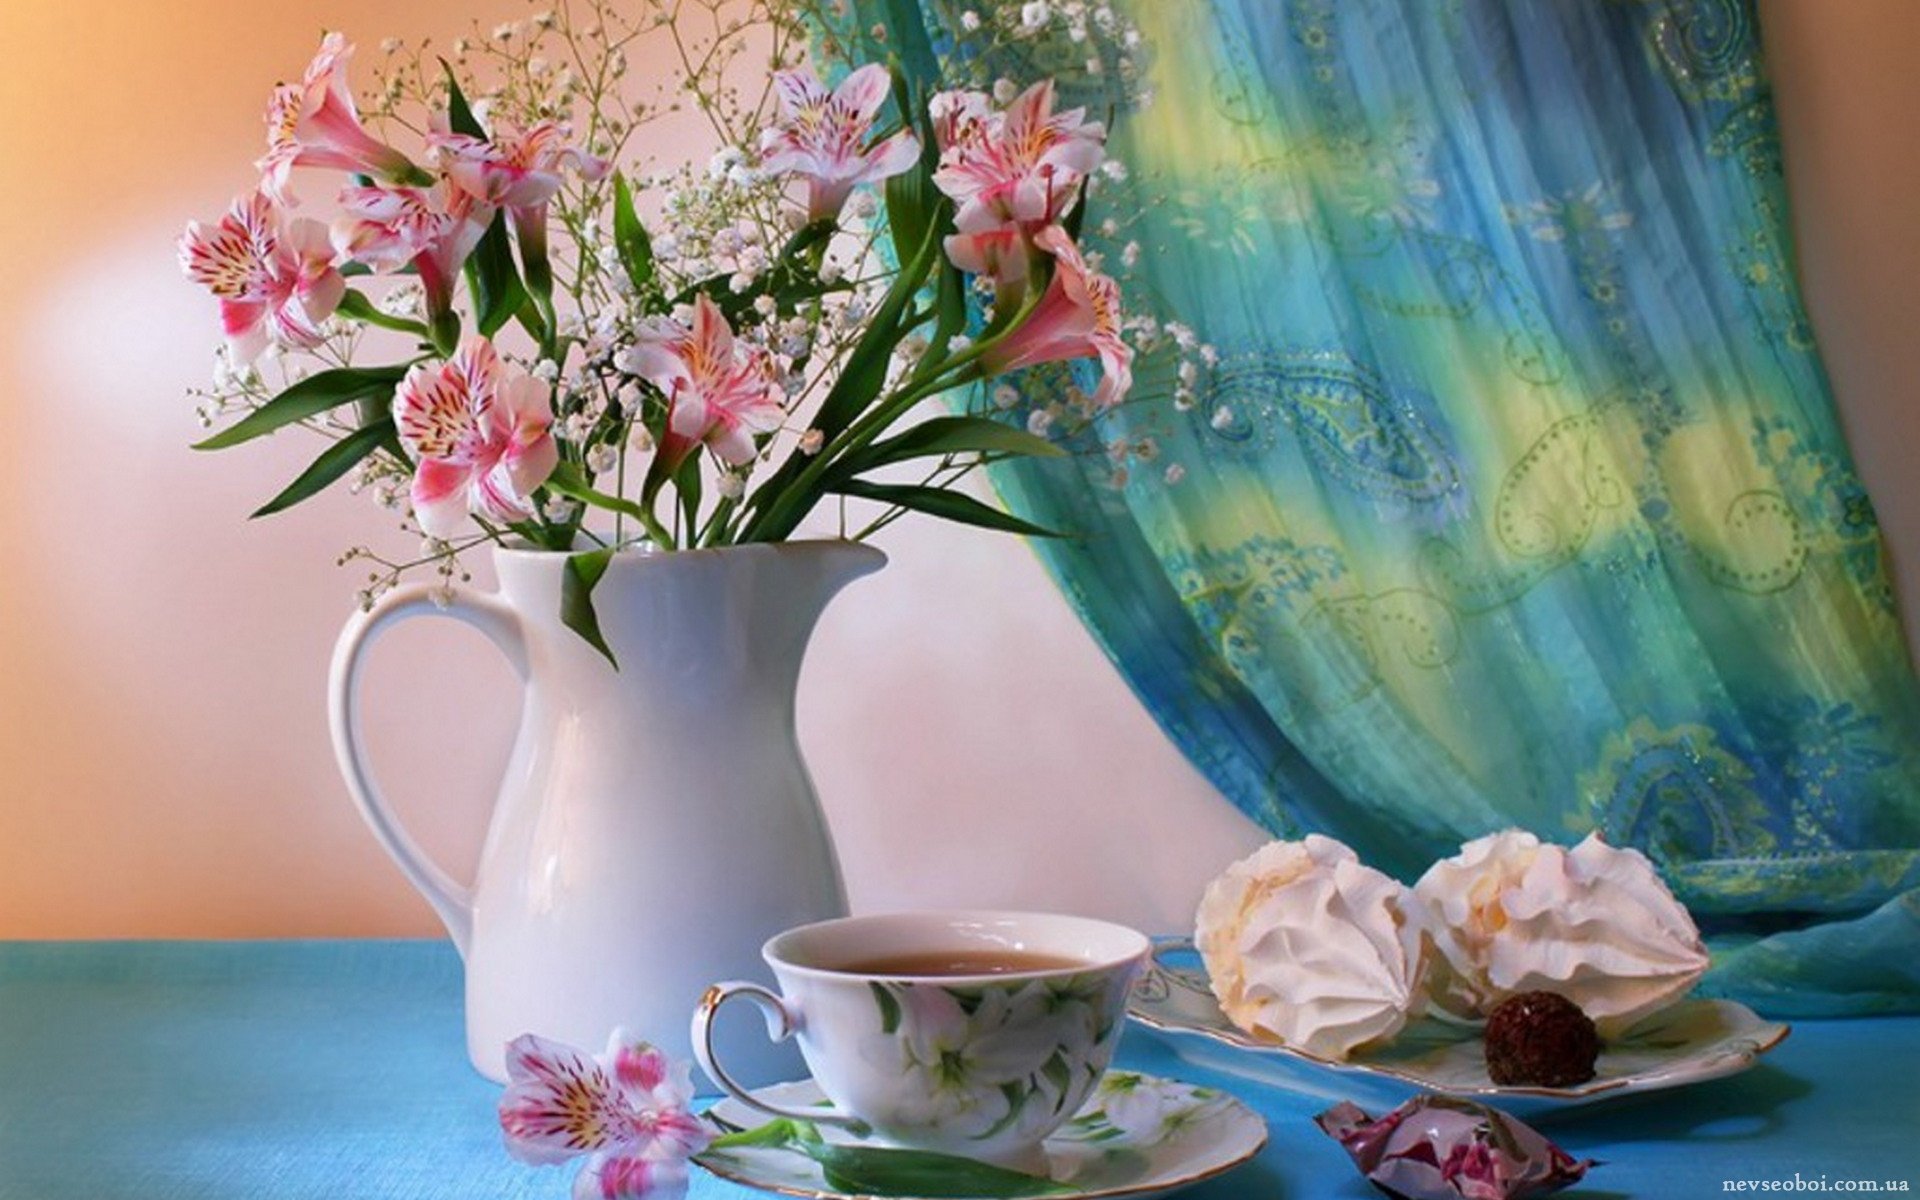 Доброе утро апреля картинки красивые необычные нежные. Утро цветы. Светлого утра. Доброе утро цветы. Утреннее настроение.